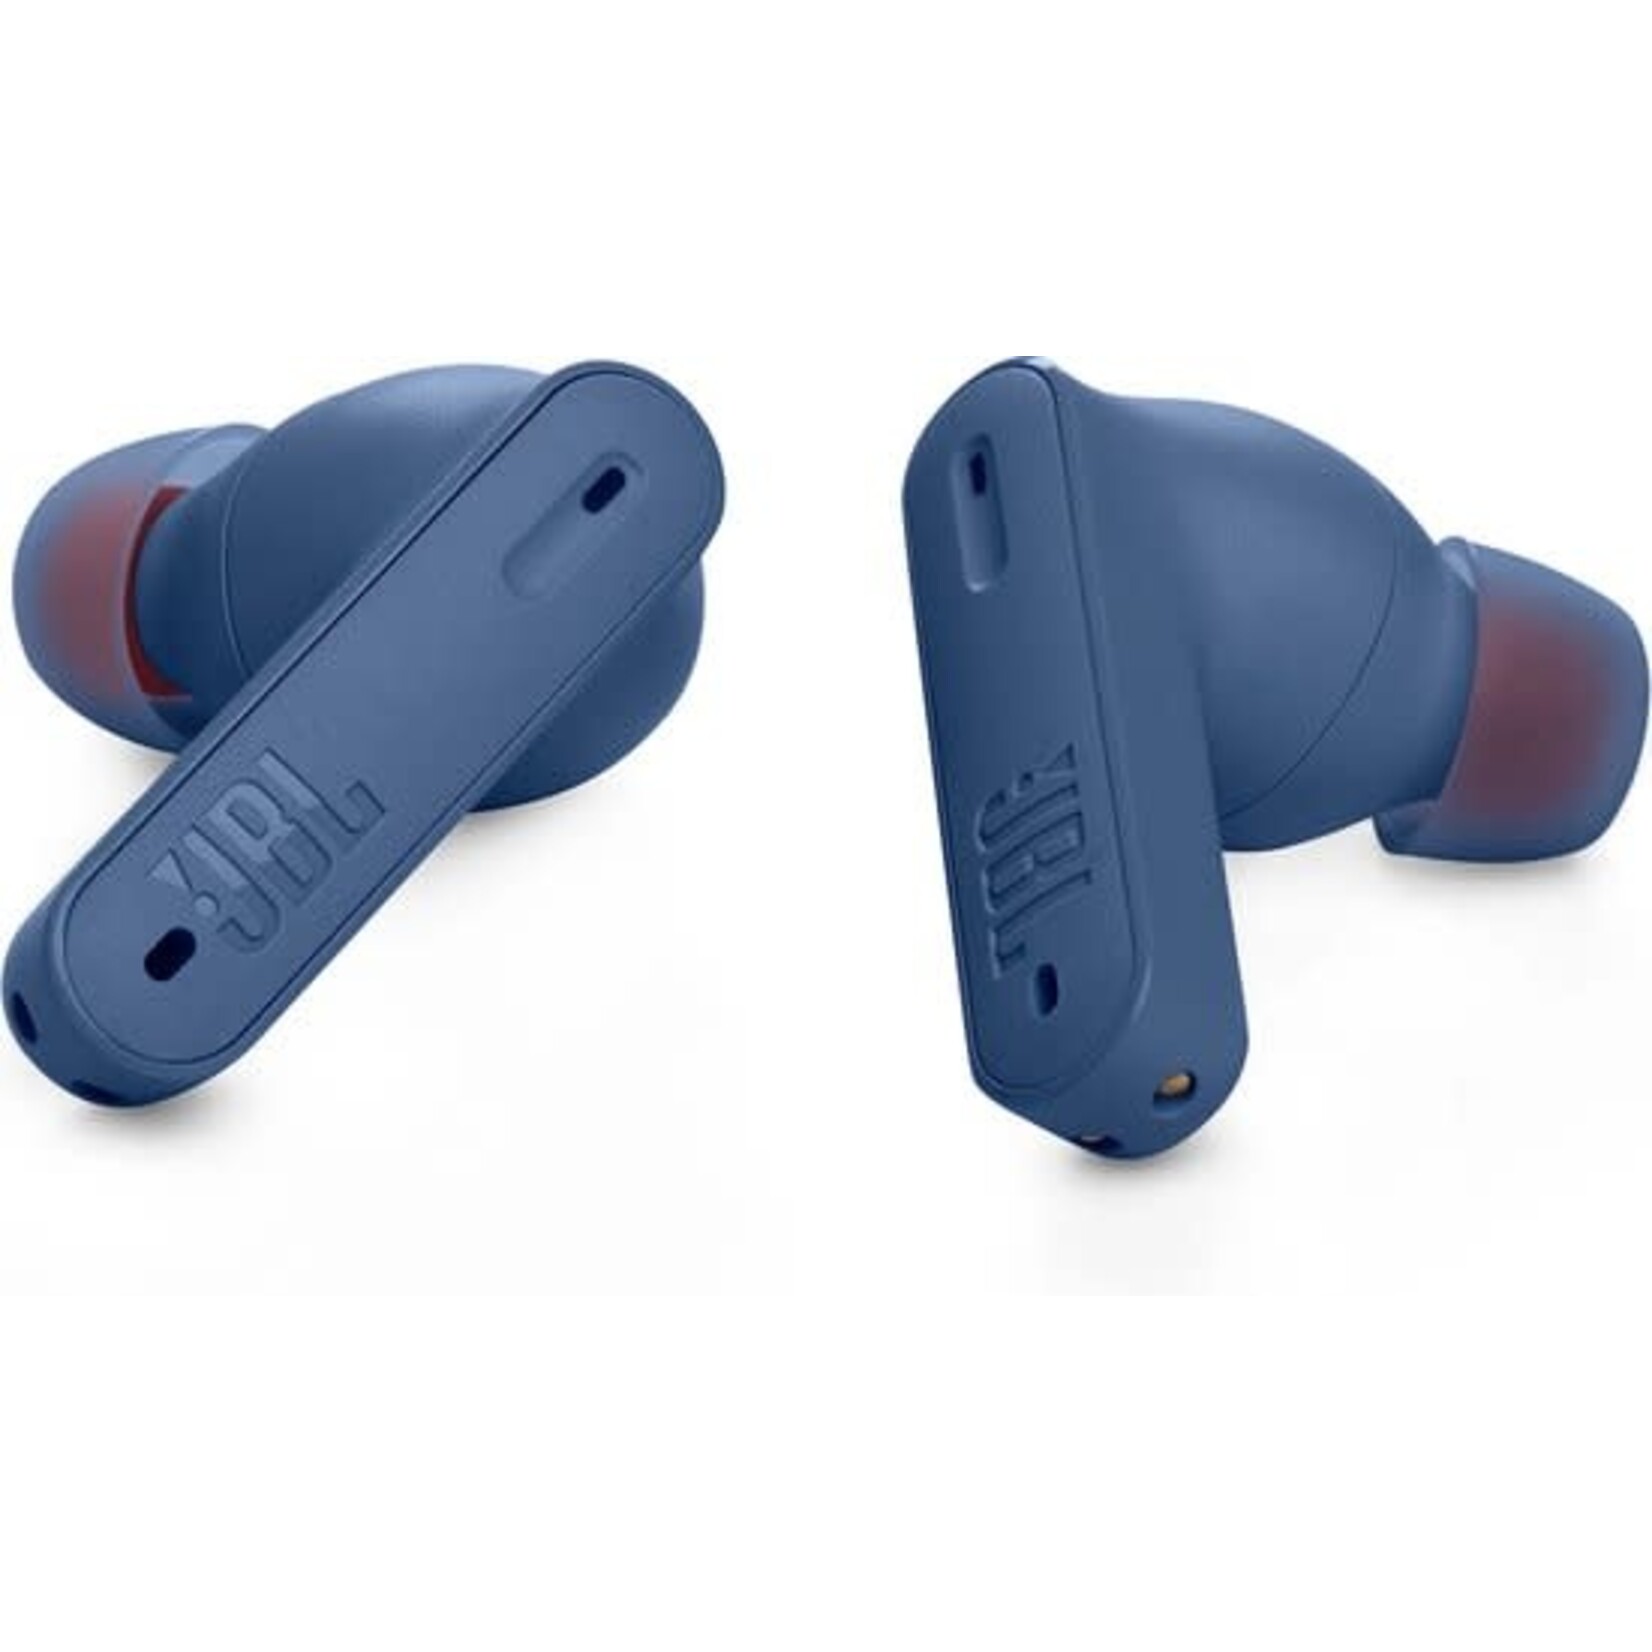 JBL JBL Tune 230NC True Wireless in-ear headphones with Noise Cancelation